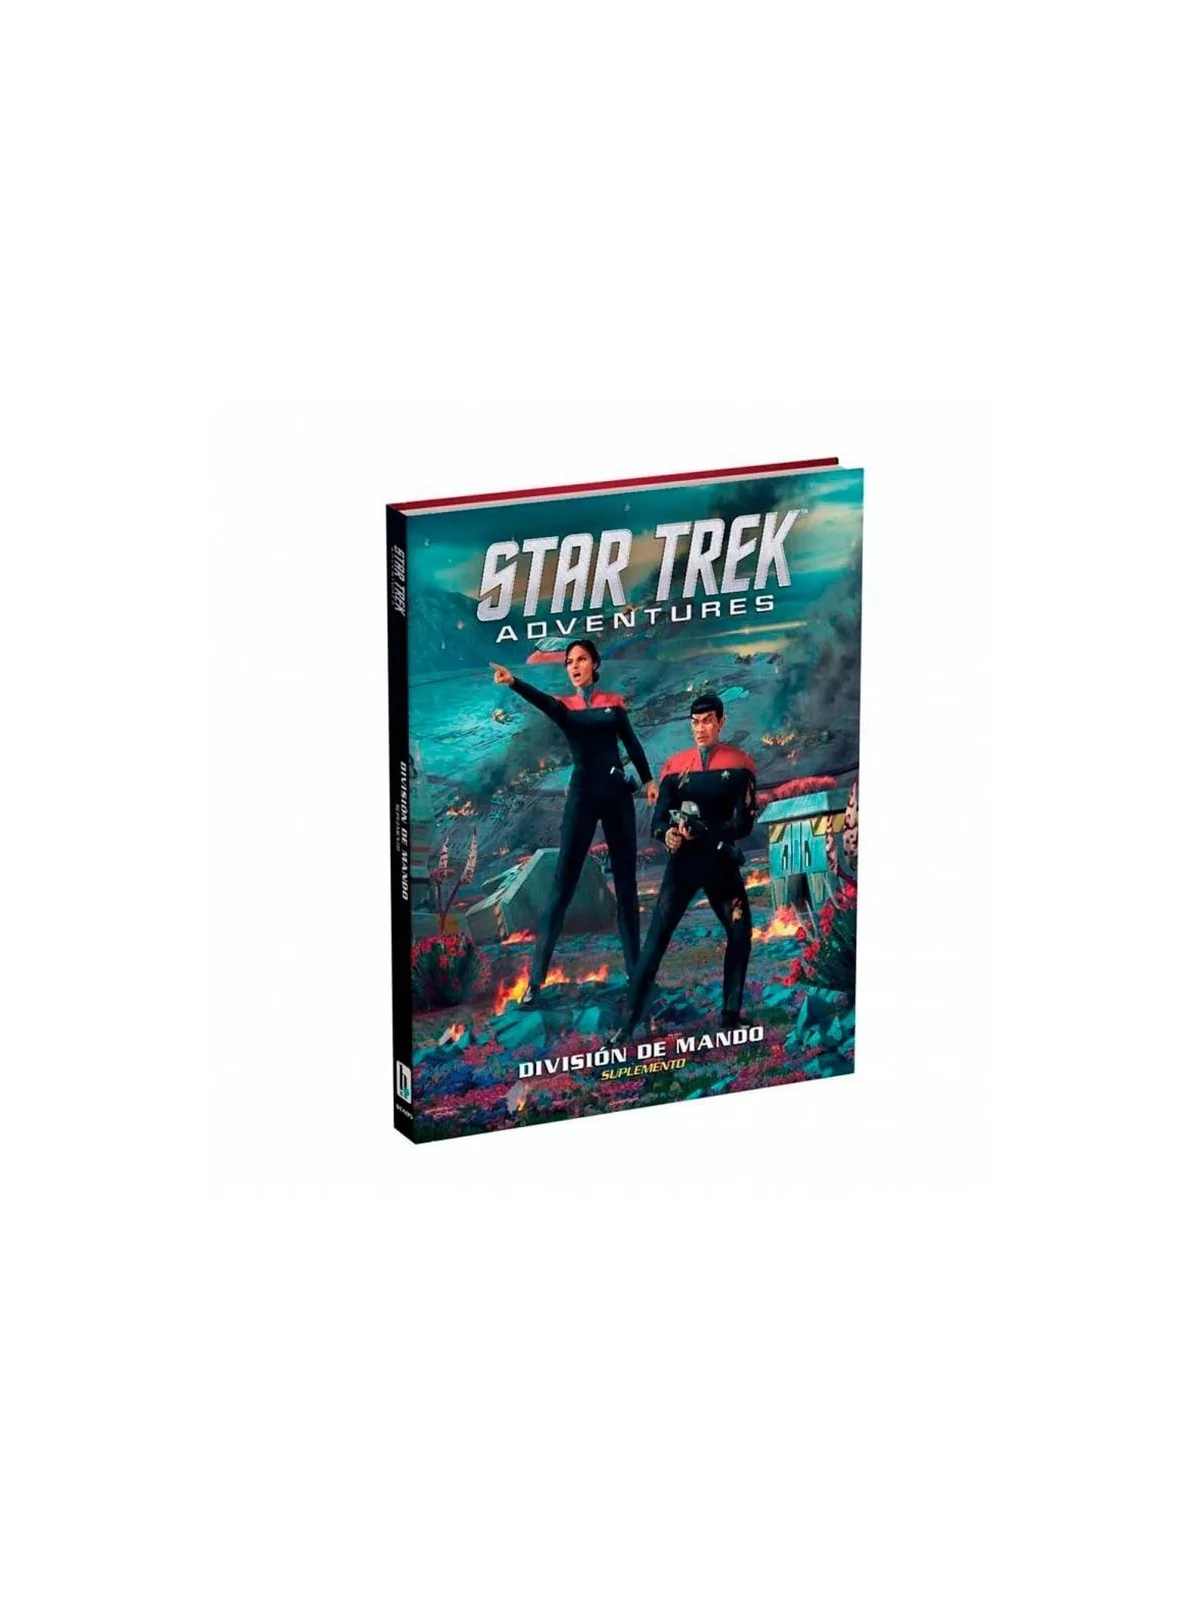 Comprar Star Trek: División de Mando barato al mejor precio 28,45 € de